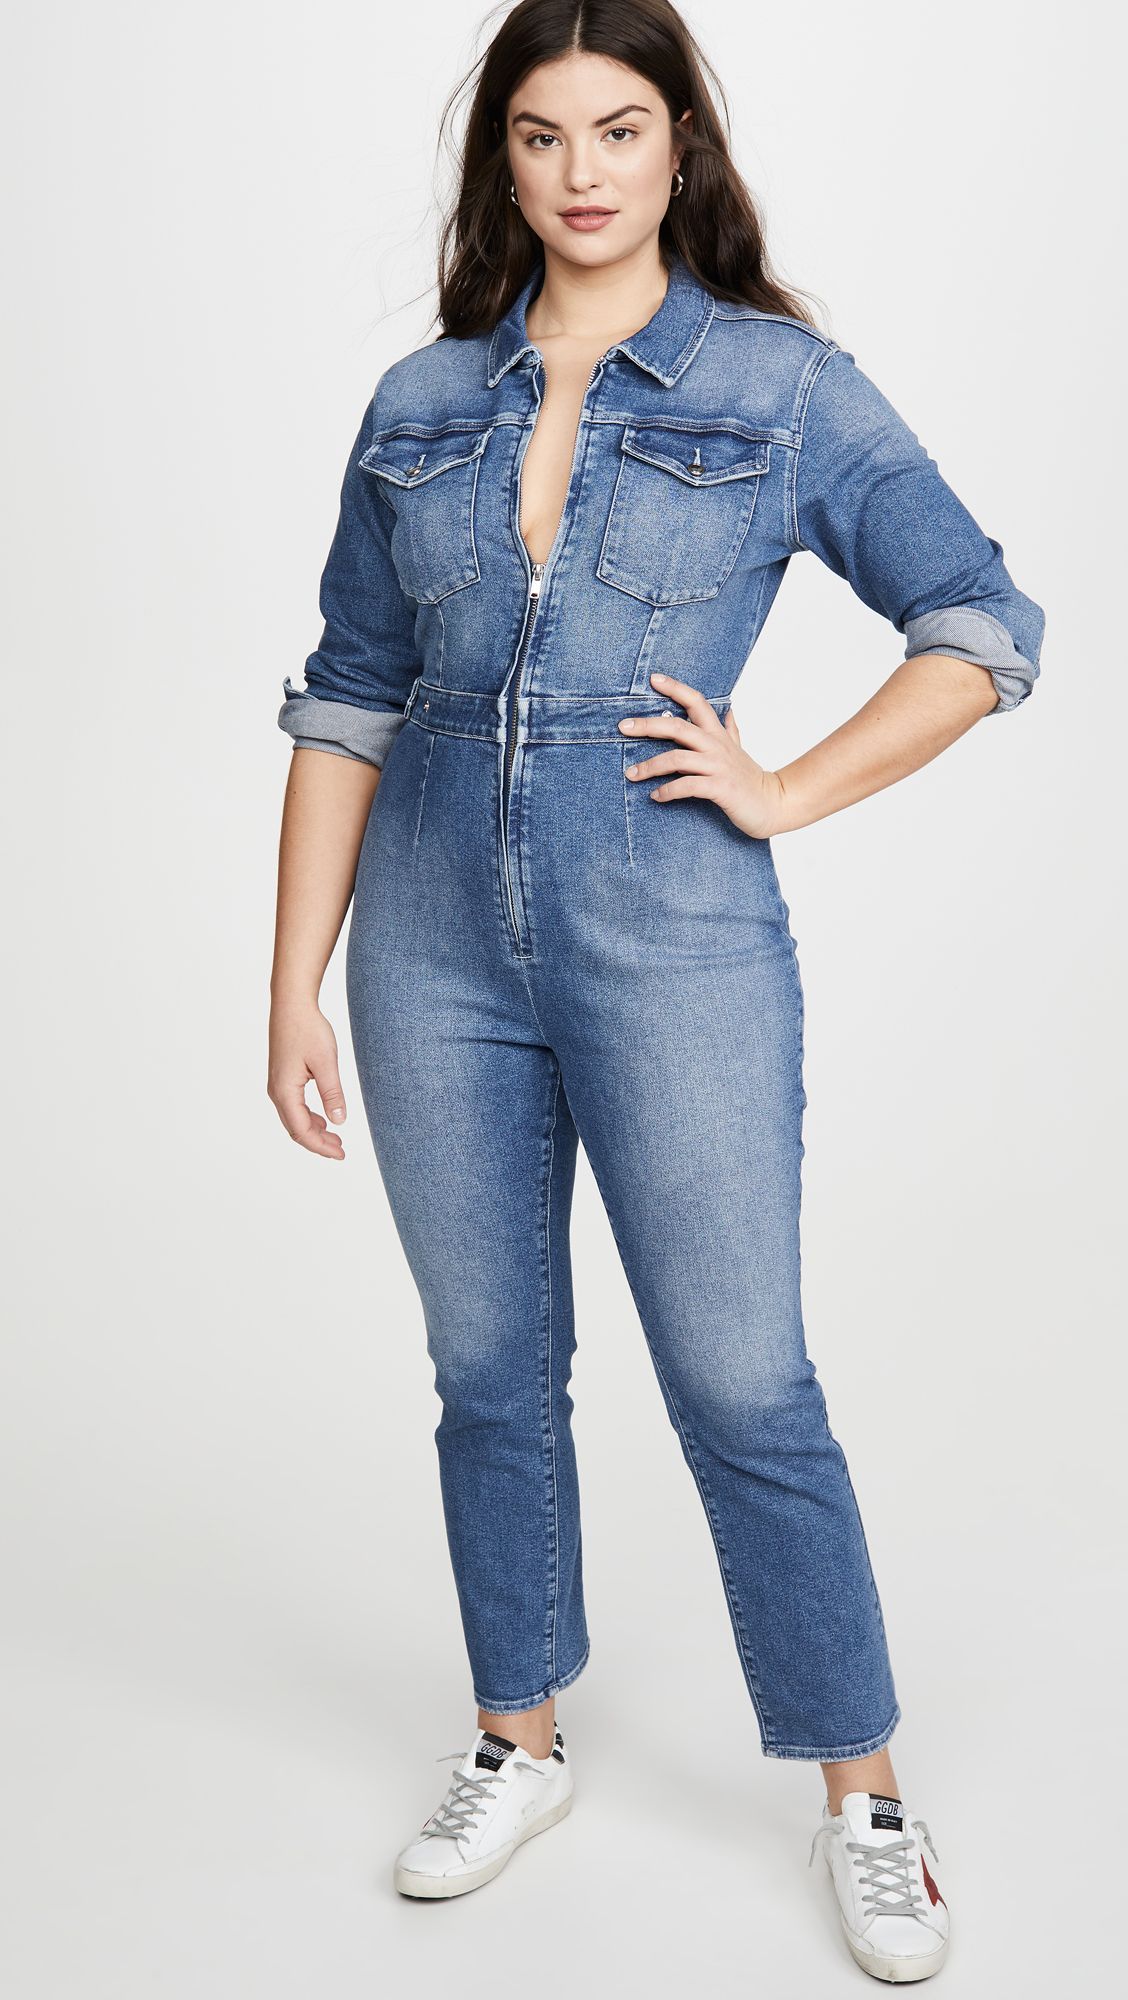 SportsX Women Jeans Button Down Vogue Drawstring Romper Jumpsuit Playsuit 